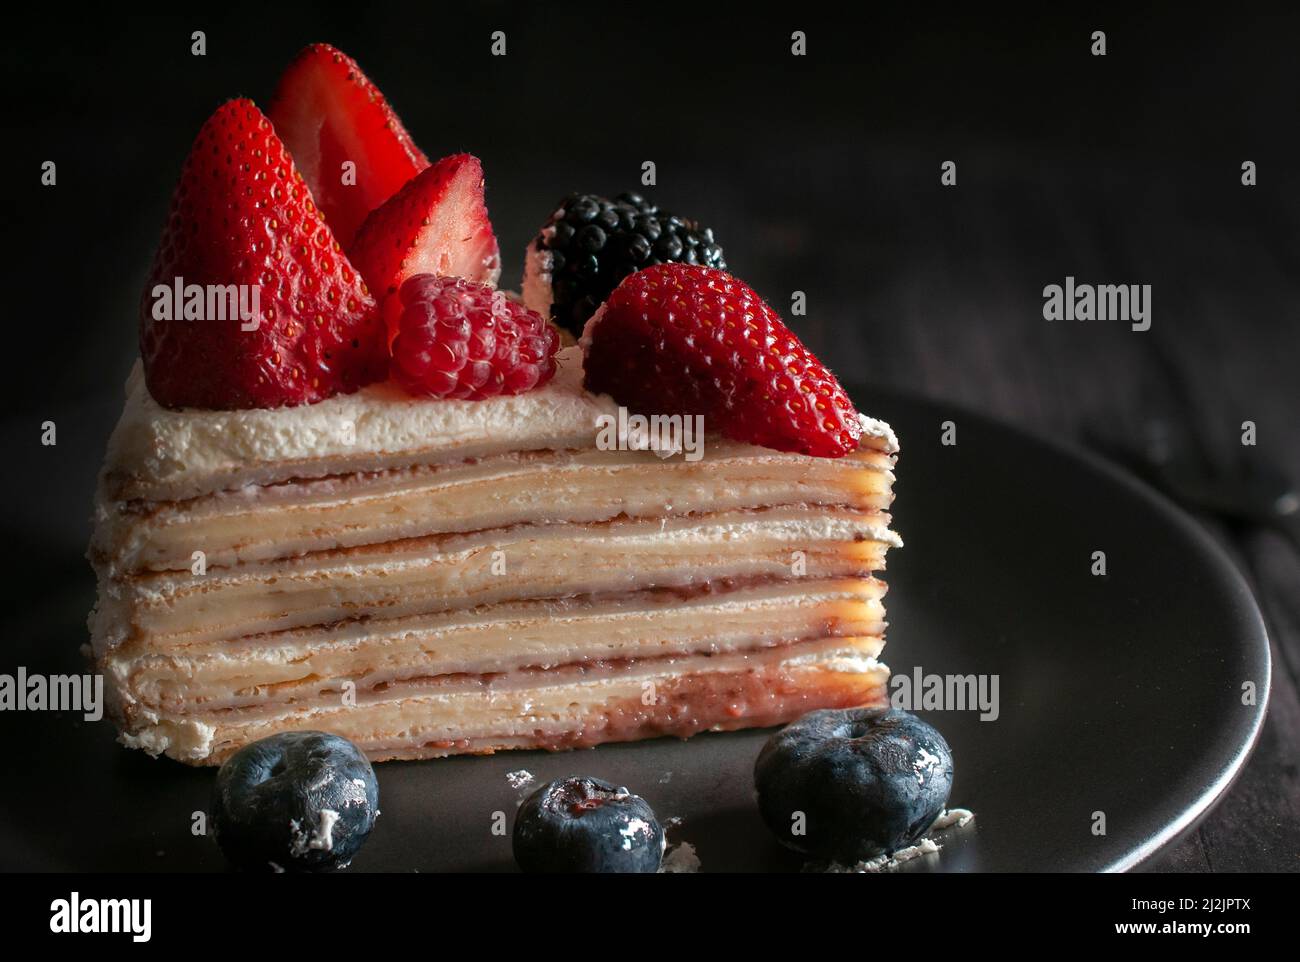 Scheibe Bananenkrepskuchen mit Creme und Erdbeeren oben mit blauen Beeren auf einem schwarzen Teller. Makro, dunkle Food-Fotografie. Stockfoto